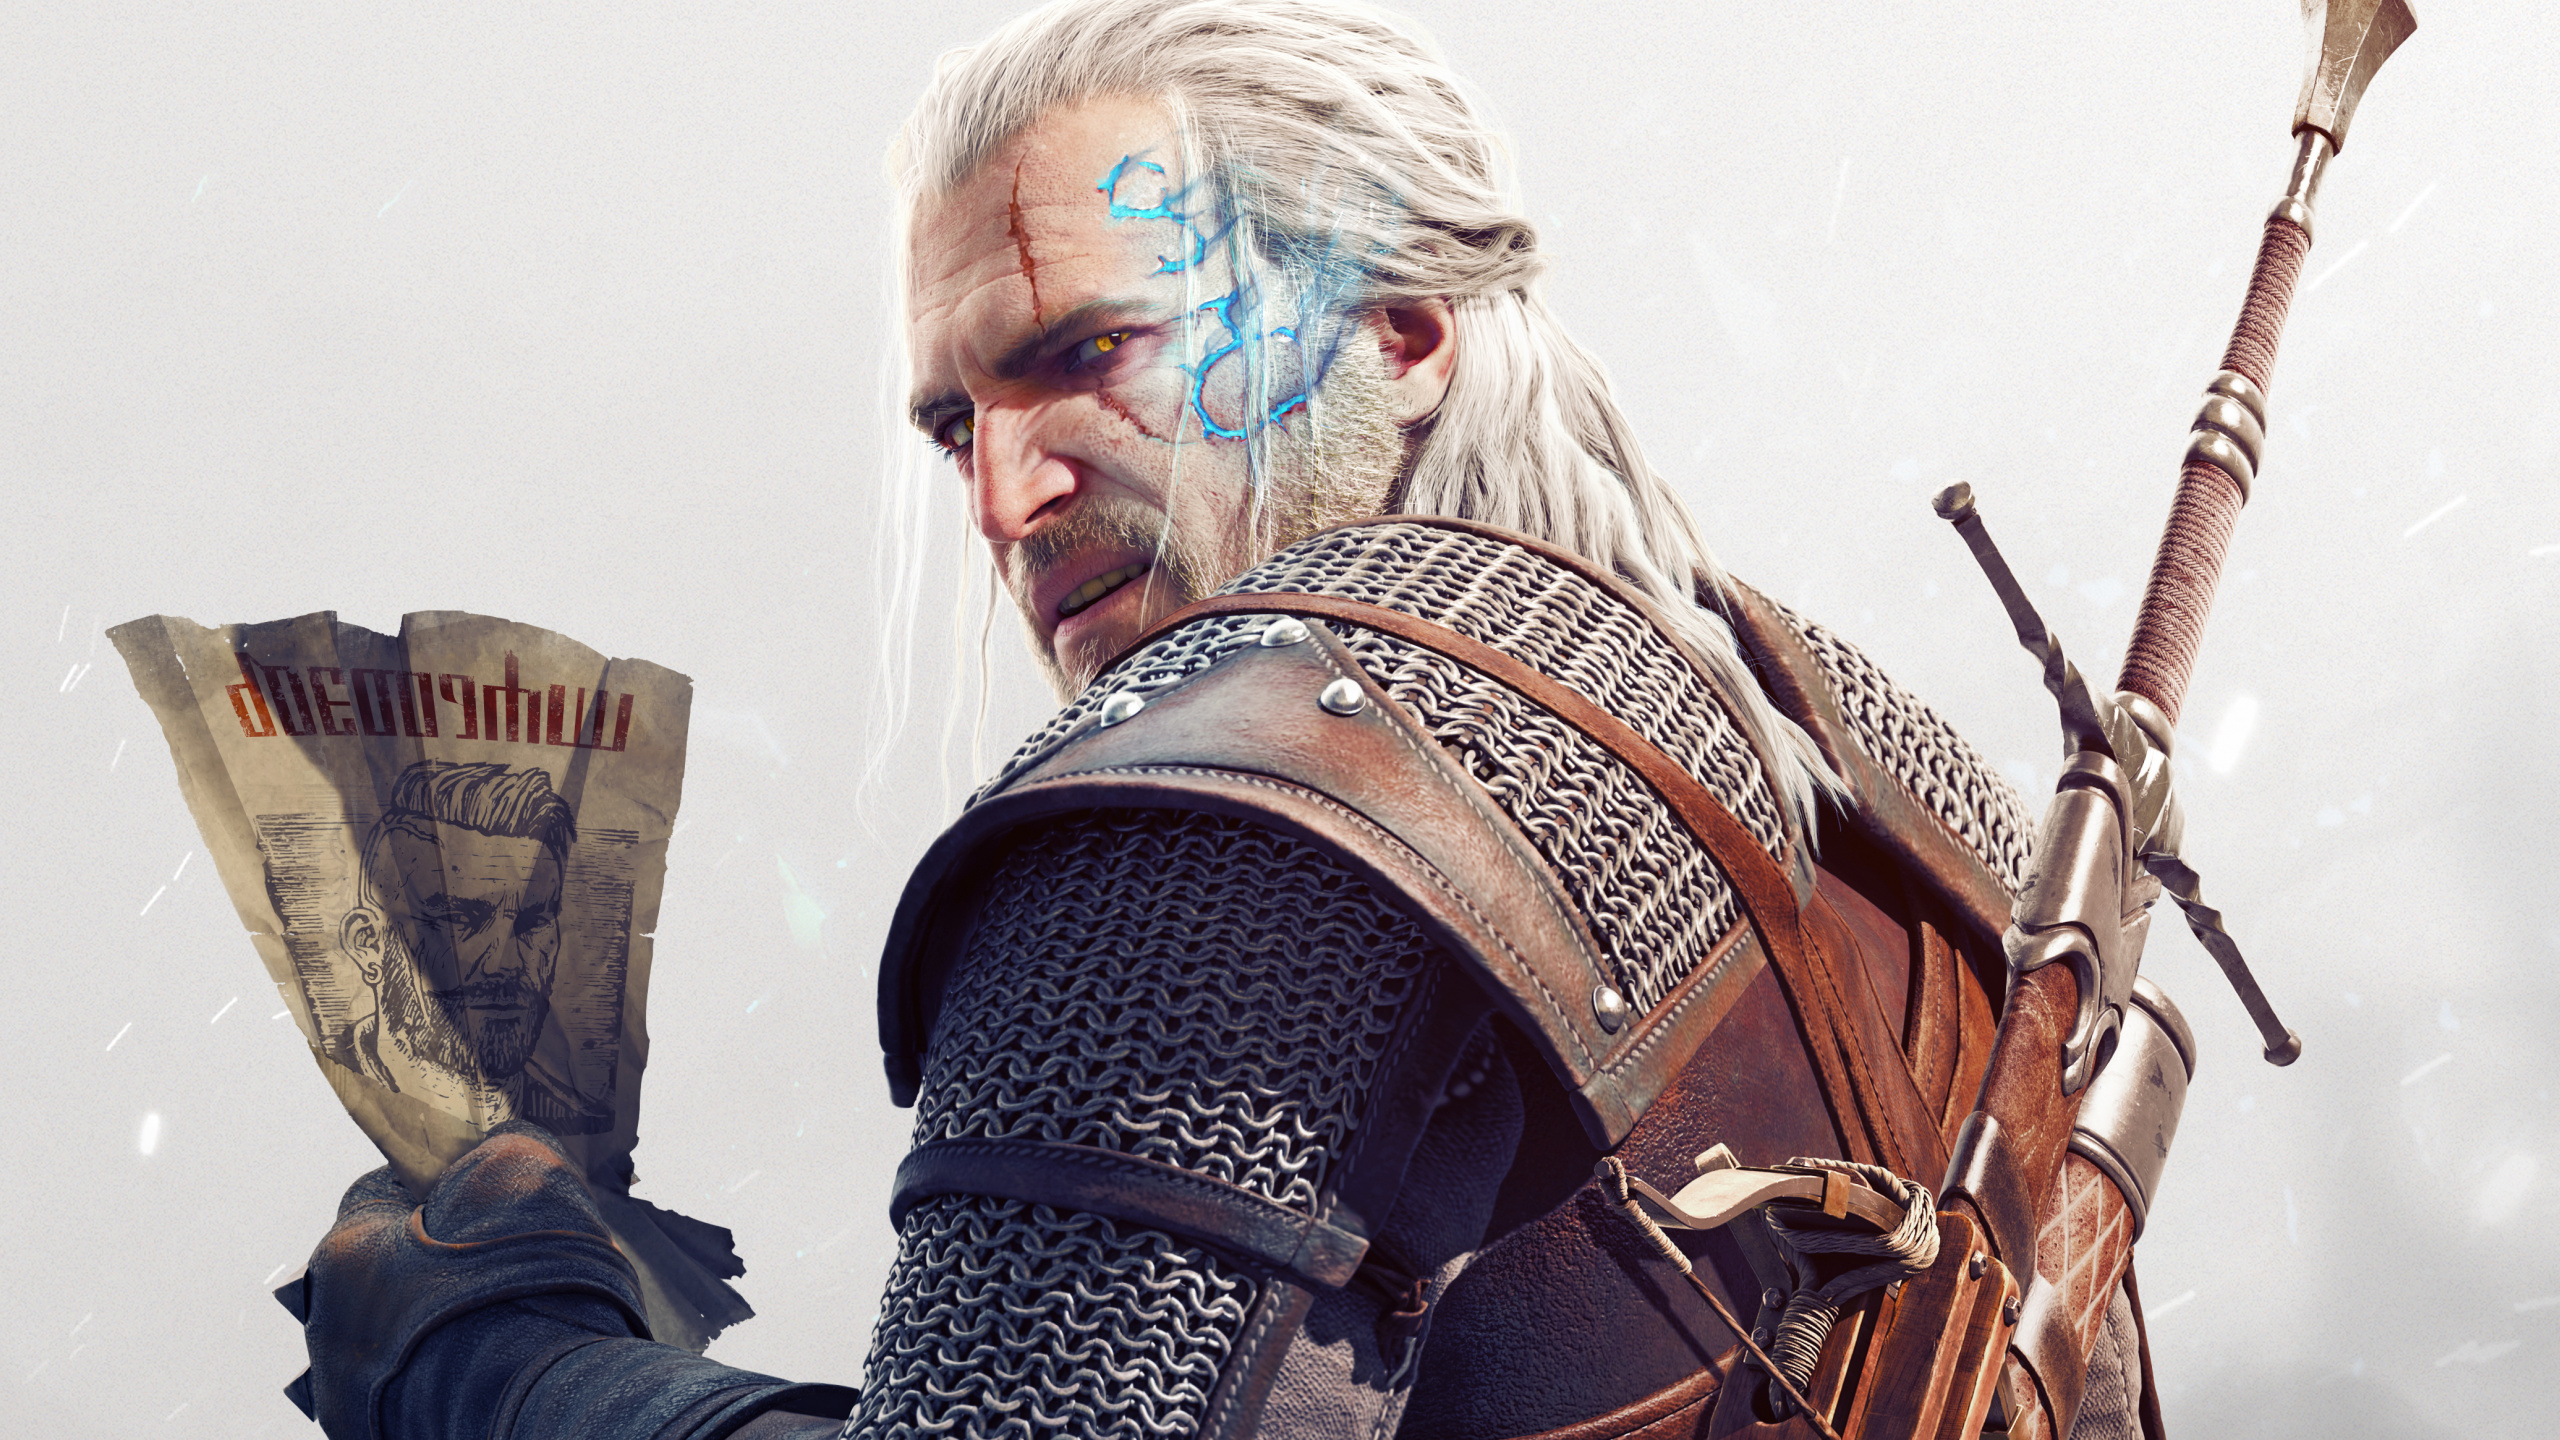 The Witcher 3 Wild Hunt, Geralt of Rivia, Beard, Facial Hair, Musician. Wallpaper in 2560x1440 Resolution